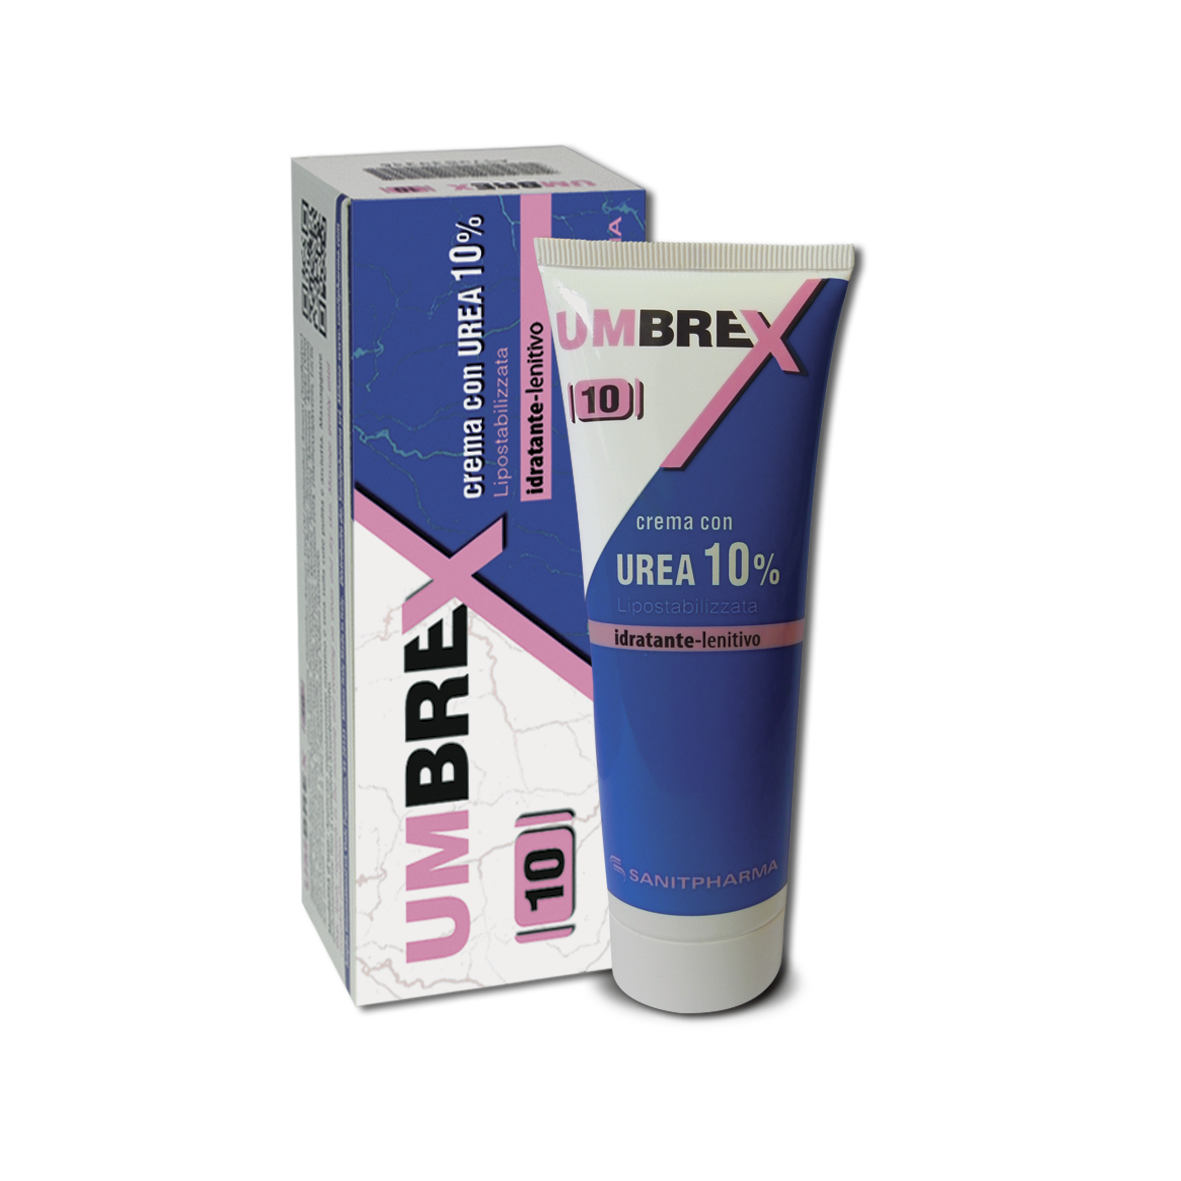 Umbrex 10 Crema